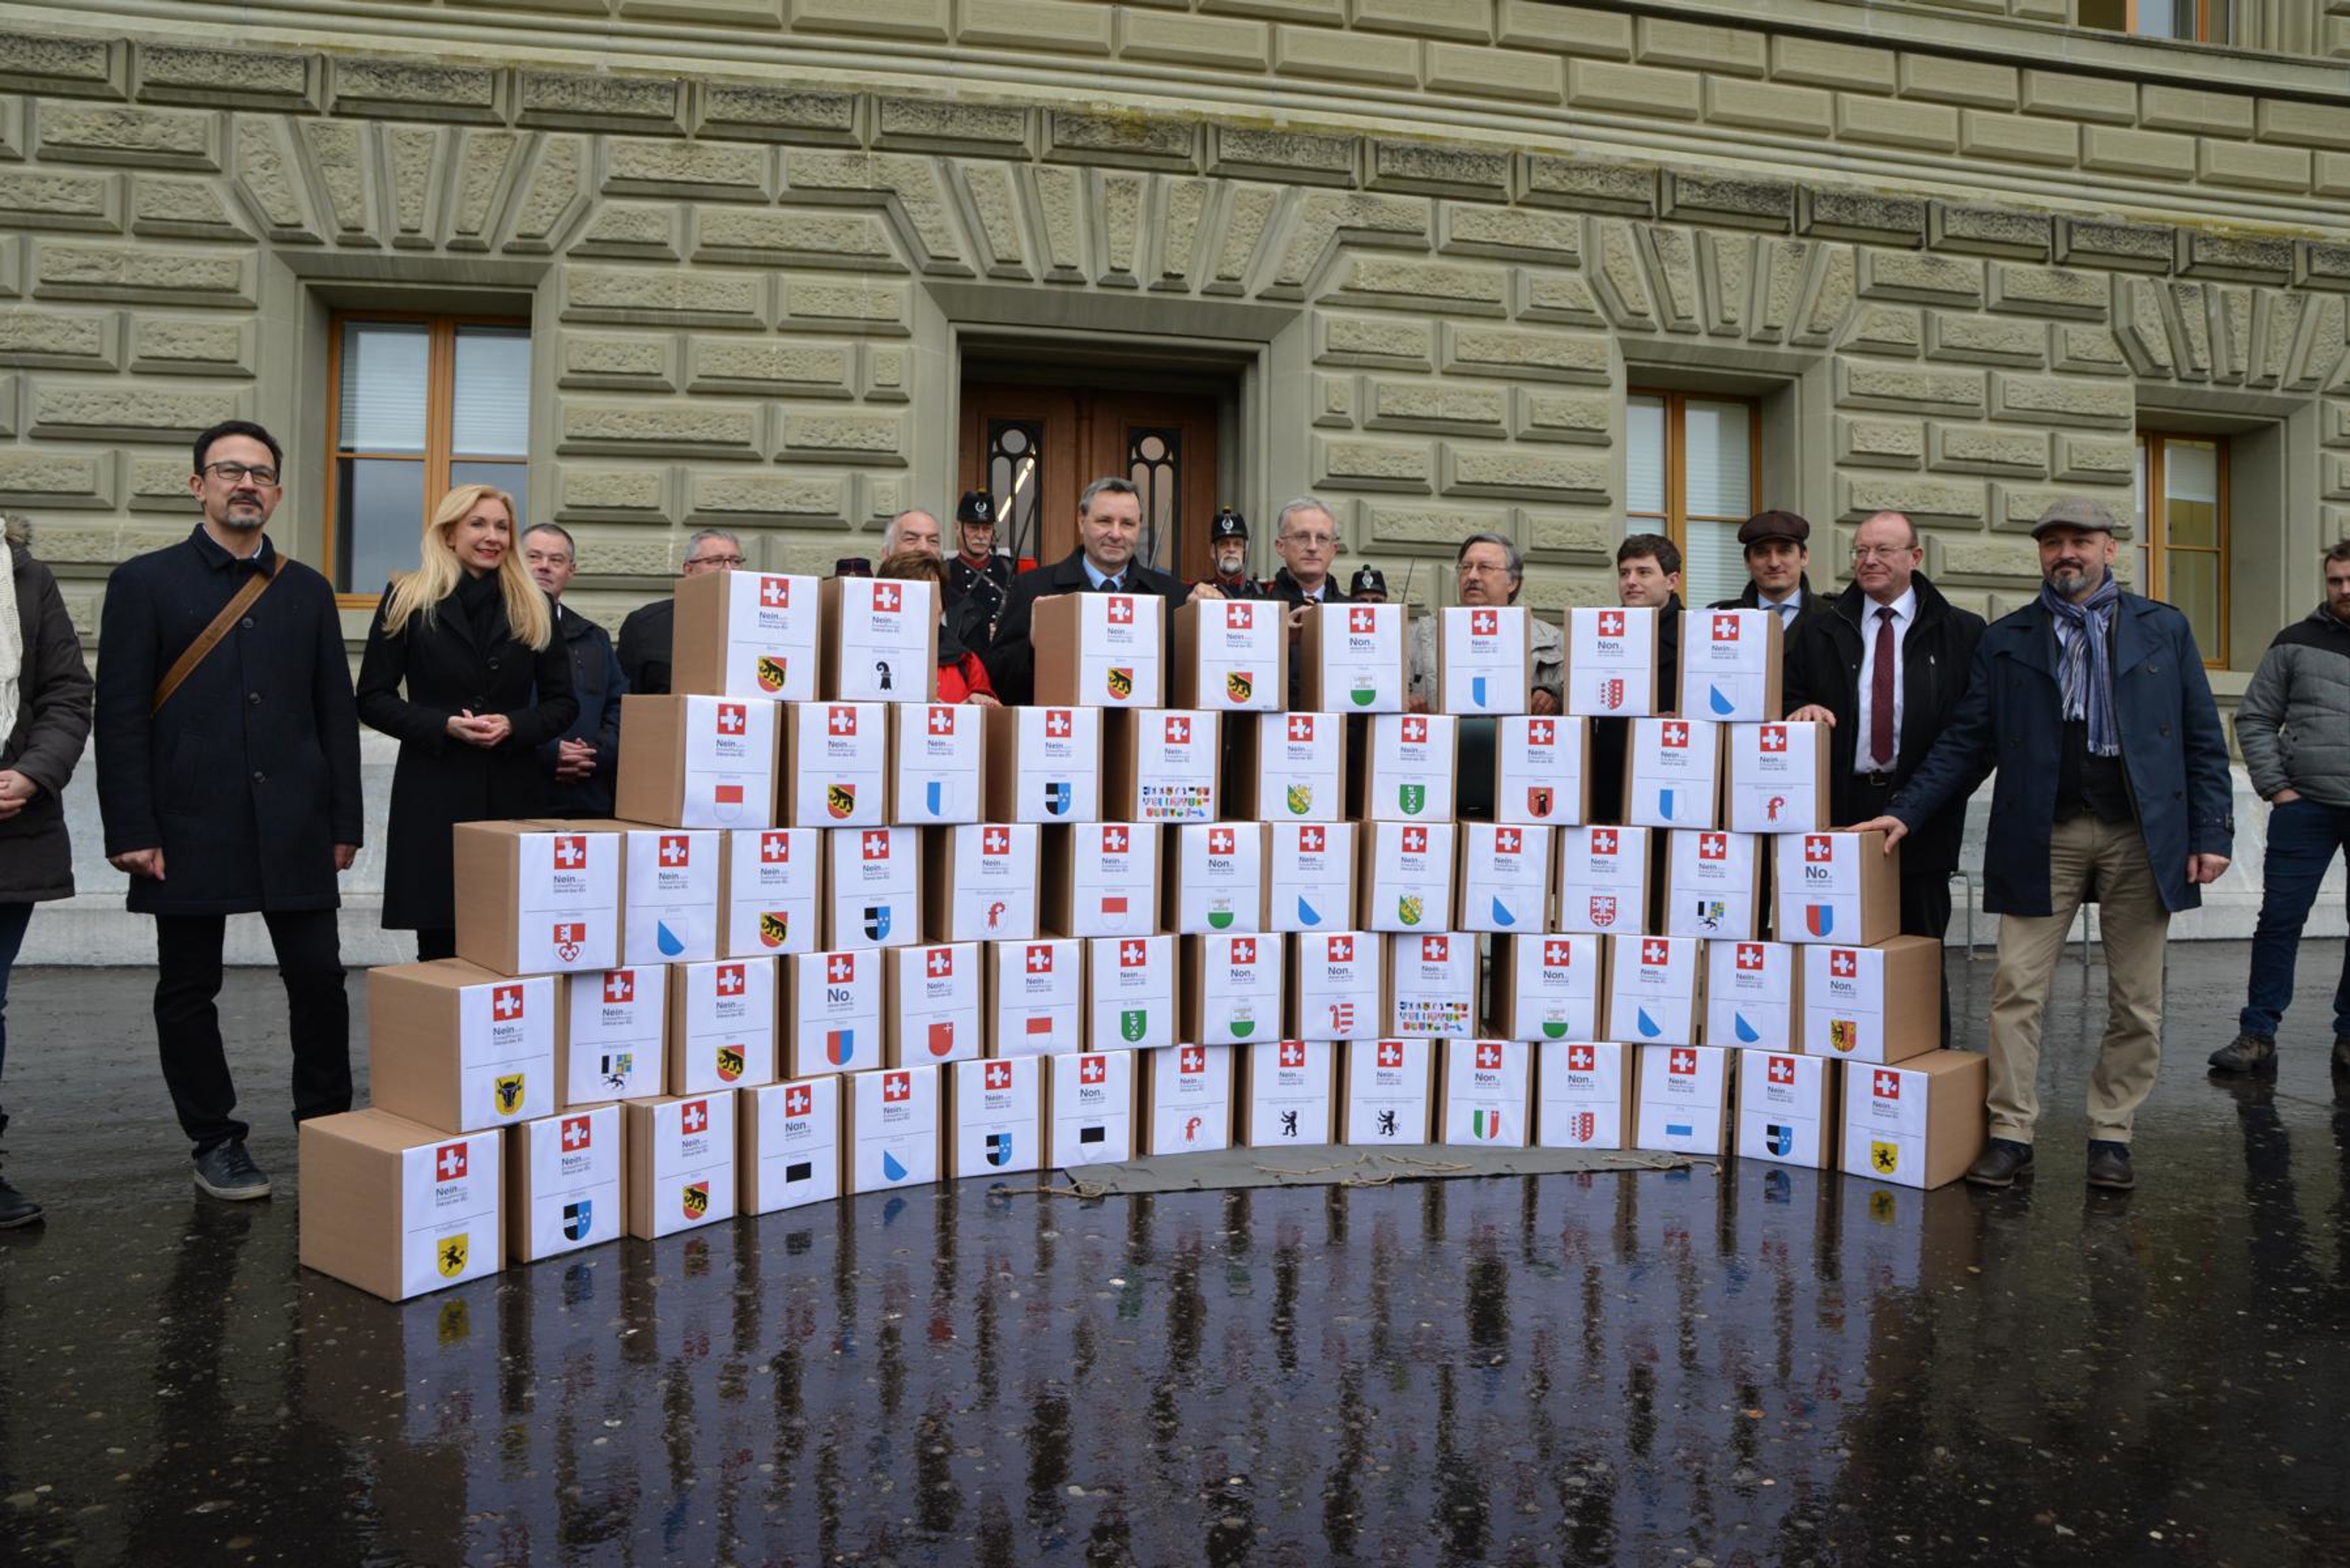 Le 17 janvier, la Communauté d'intérêts du tir suisse a remis plus de 125'000 signatures à la Chancellerie fédérale pour le référendum contre la loi sur les armes et la reprise de la directive sur les armes de l'UE.